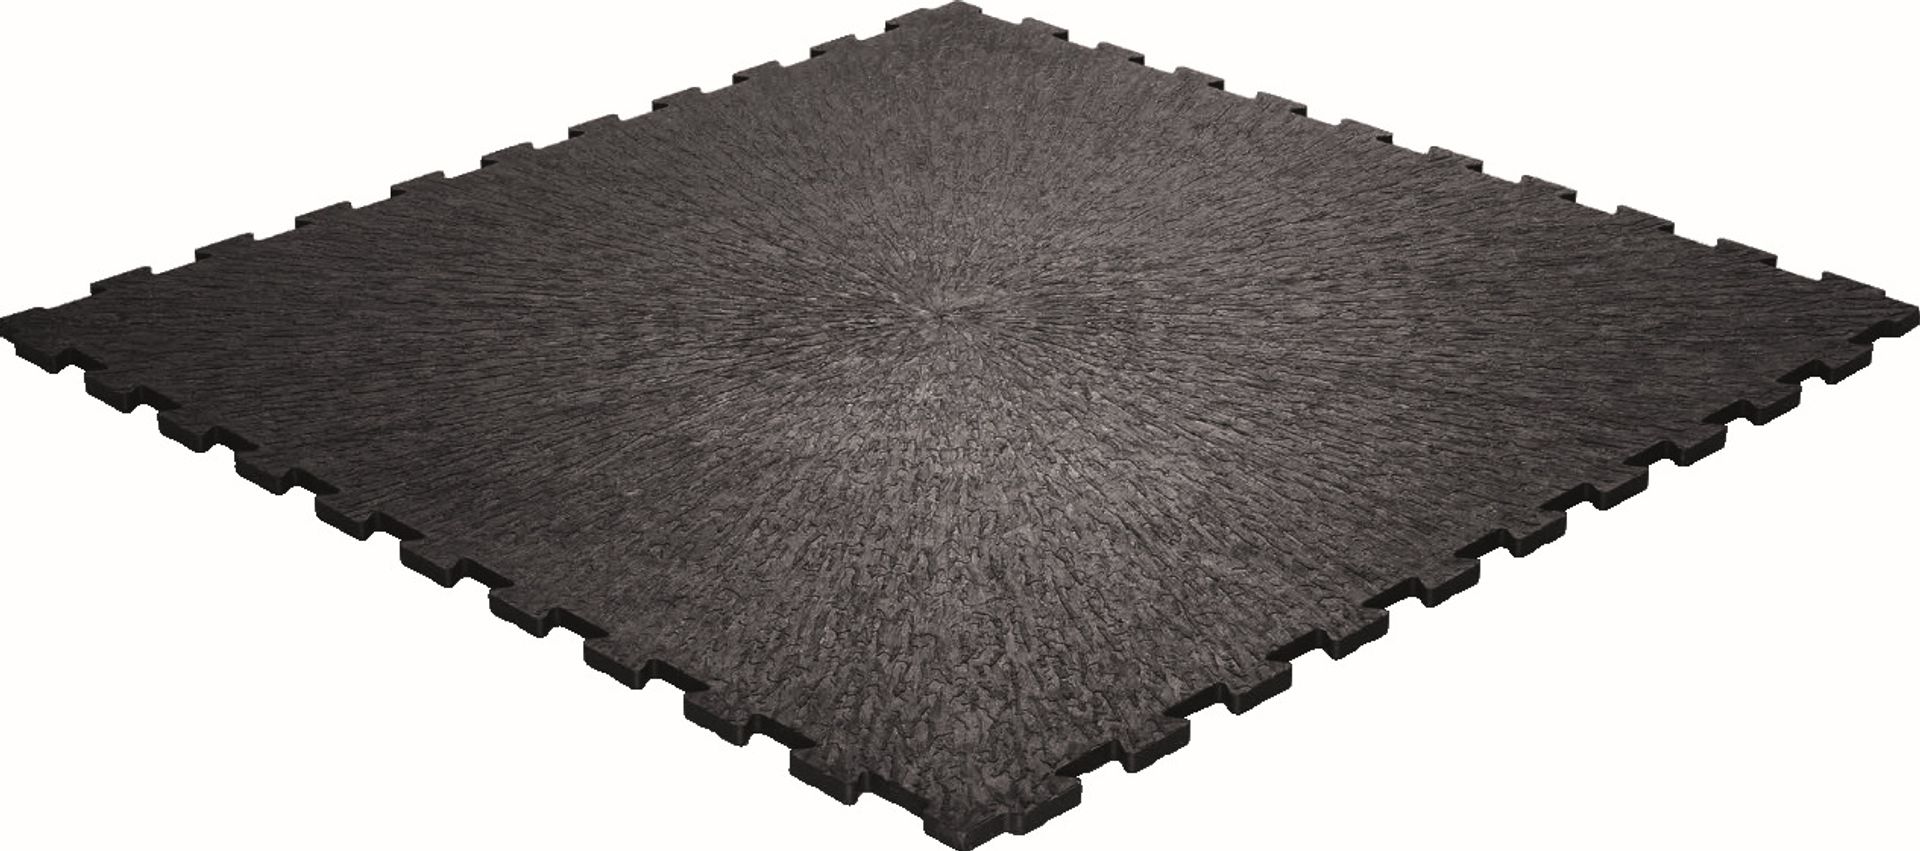 PVC-Industrieboden FAST Klickfliese schwarz (9001) Strukturiert 490 mm x 490 mm - 12,5 mm Dicke